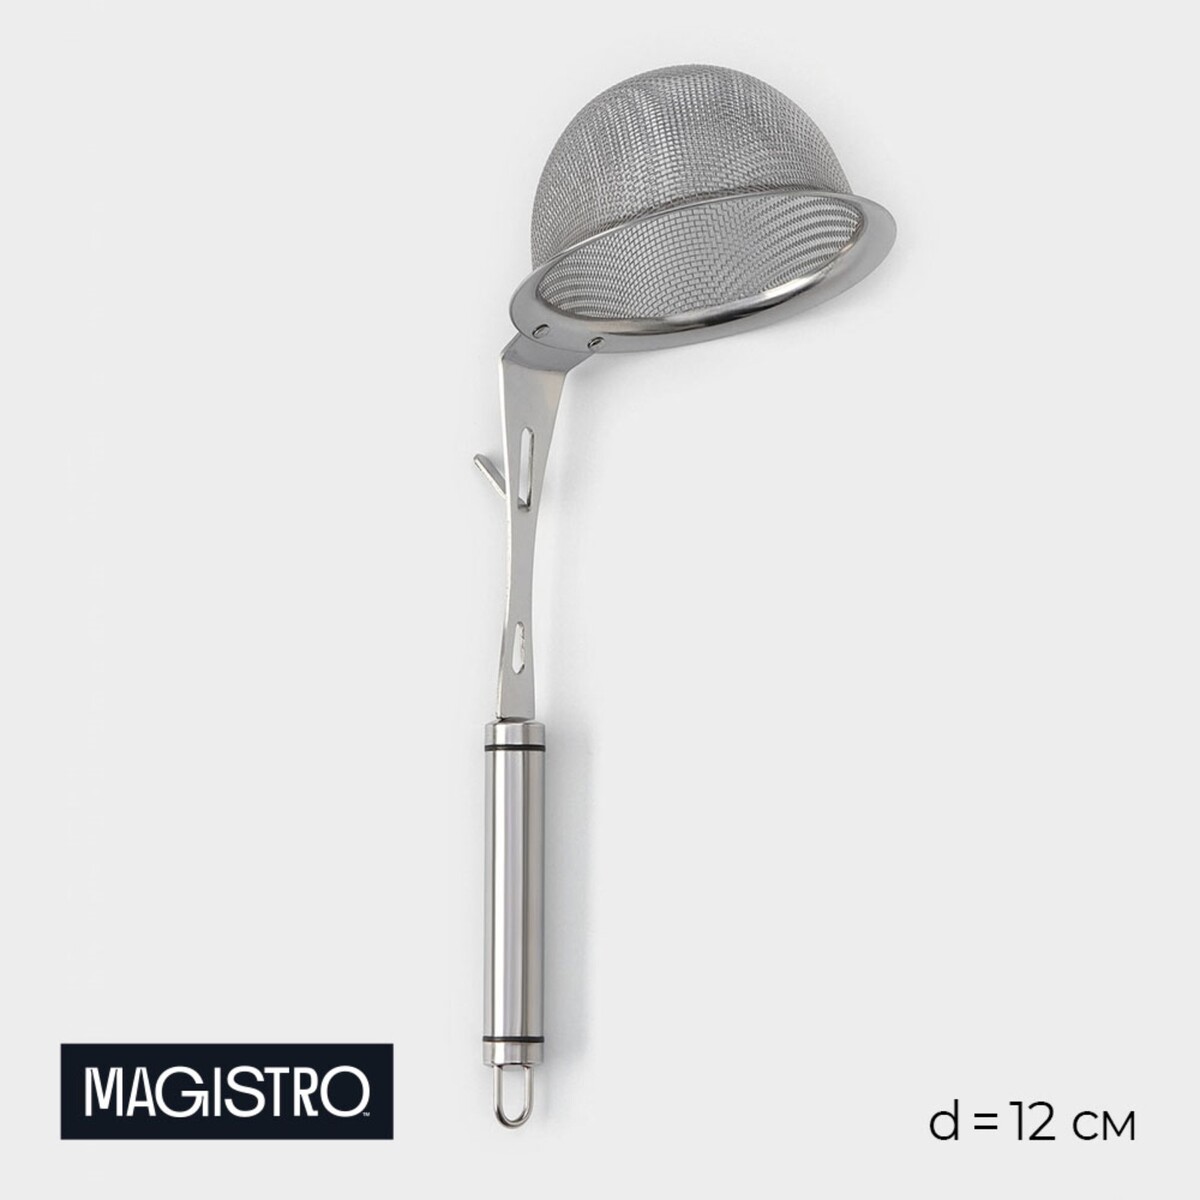 Сито - дуршлаг magistro arti, d=12 см, с фиксатором дуршлаг сито с деревянной ручкой 39см диаметр13см глубина 4 5см